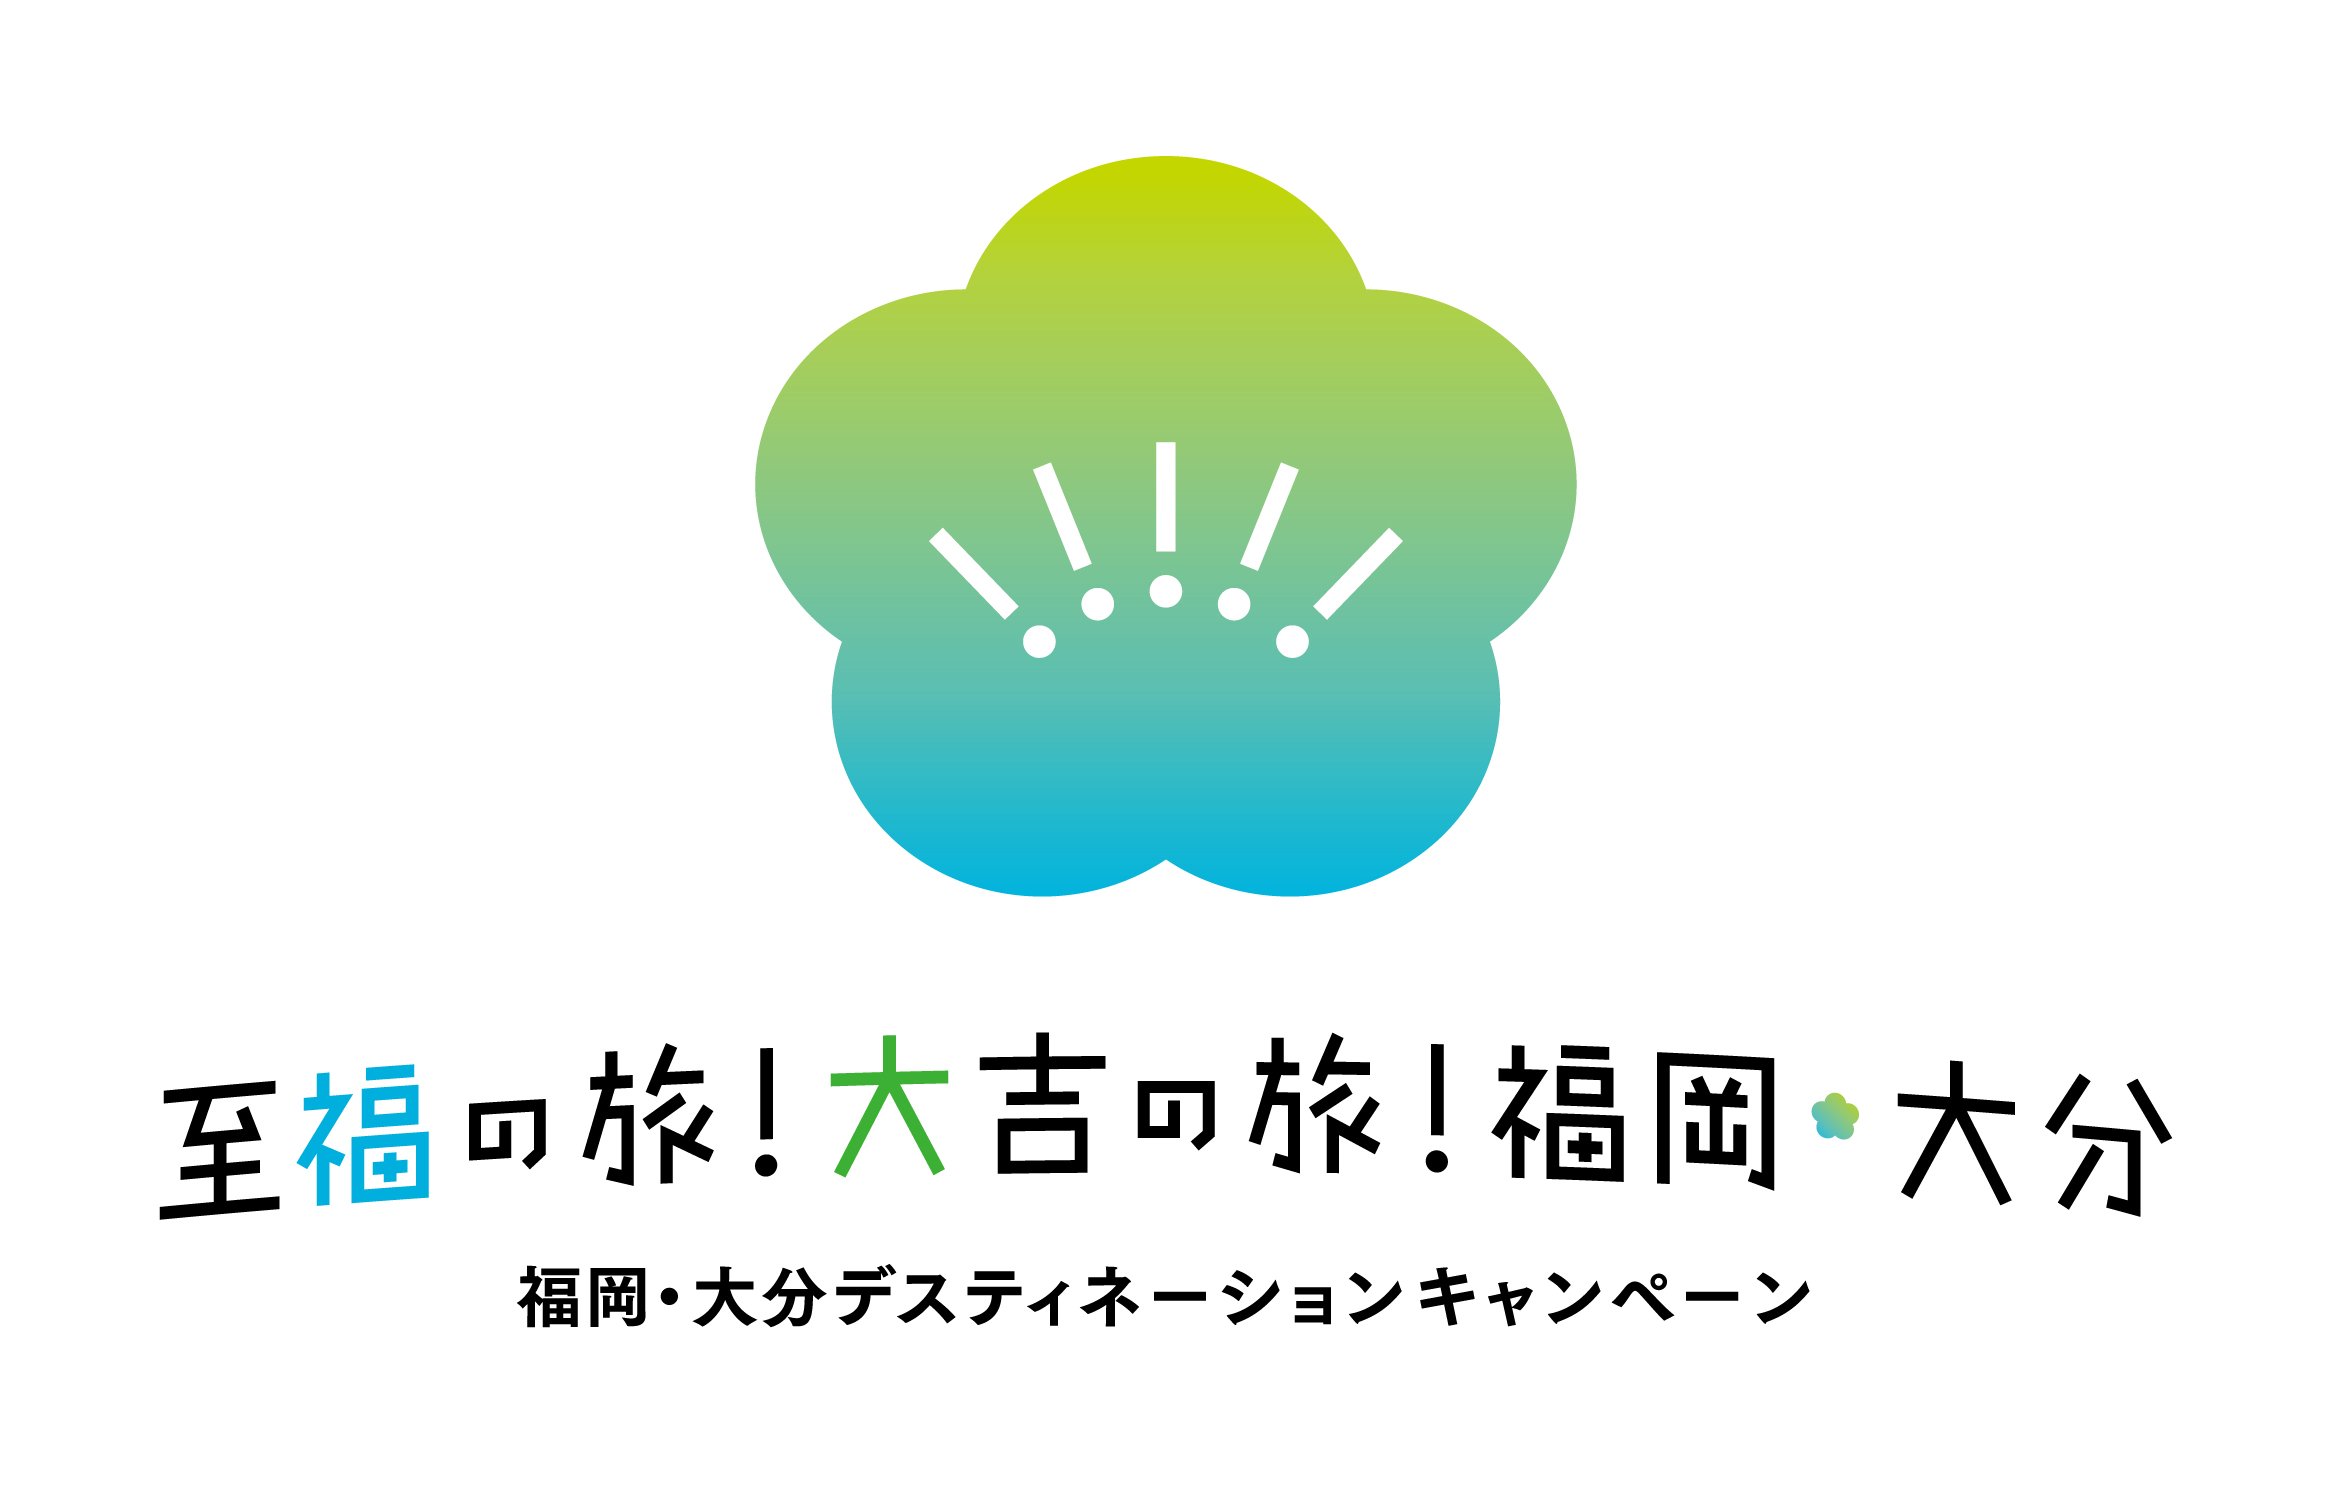 「福岡・大分デスティネーションキャンペーン」ロゴ